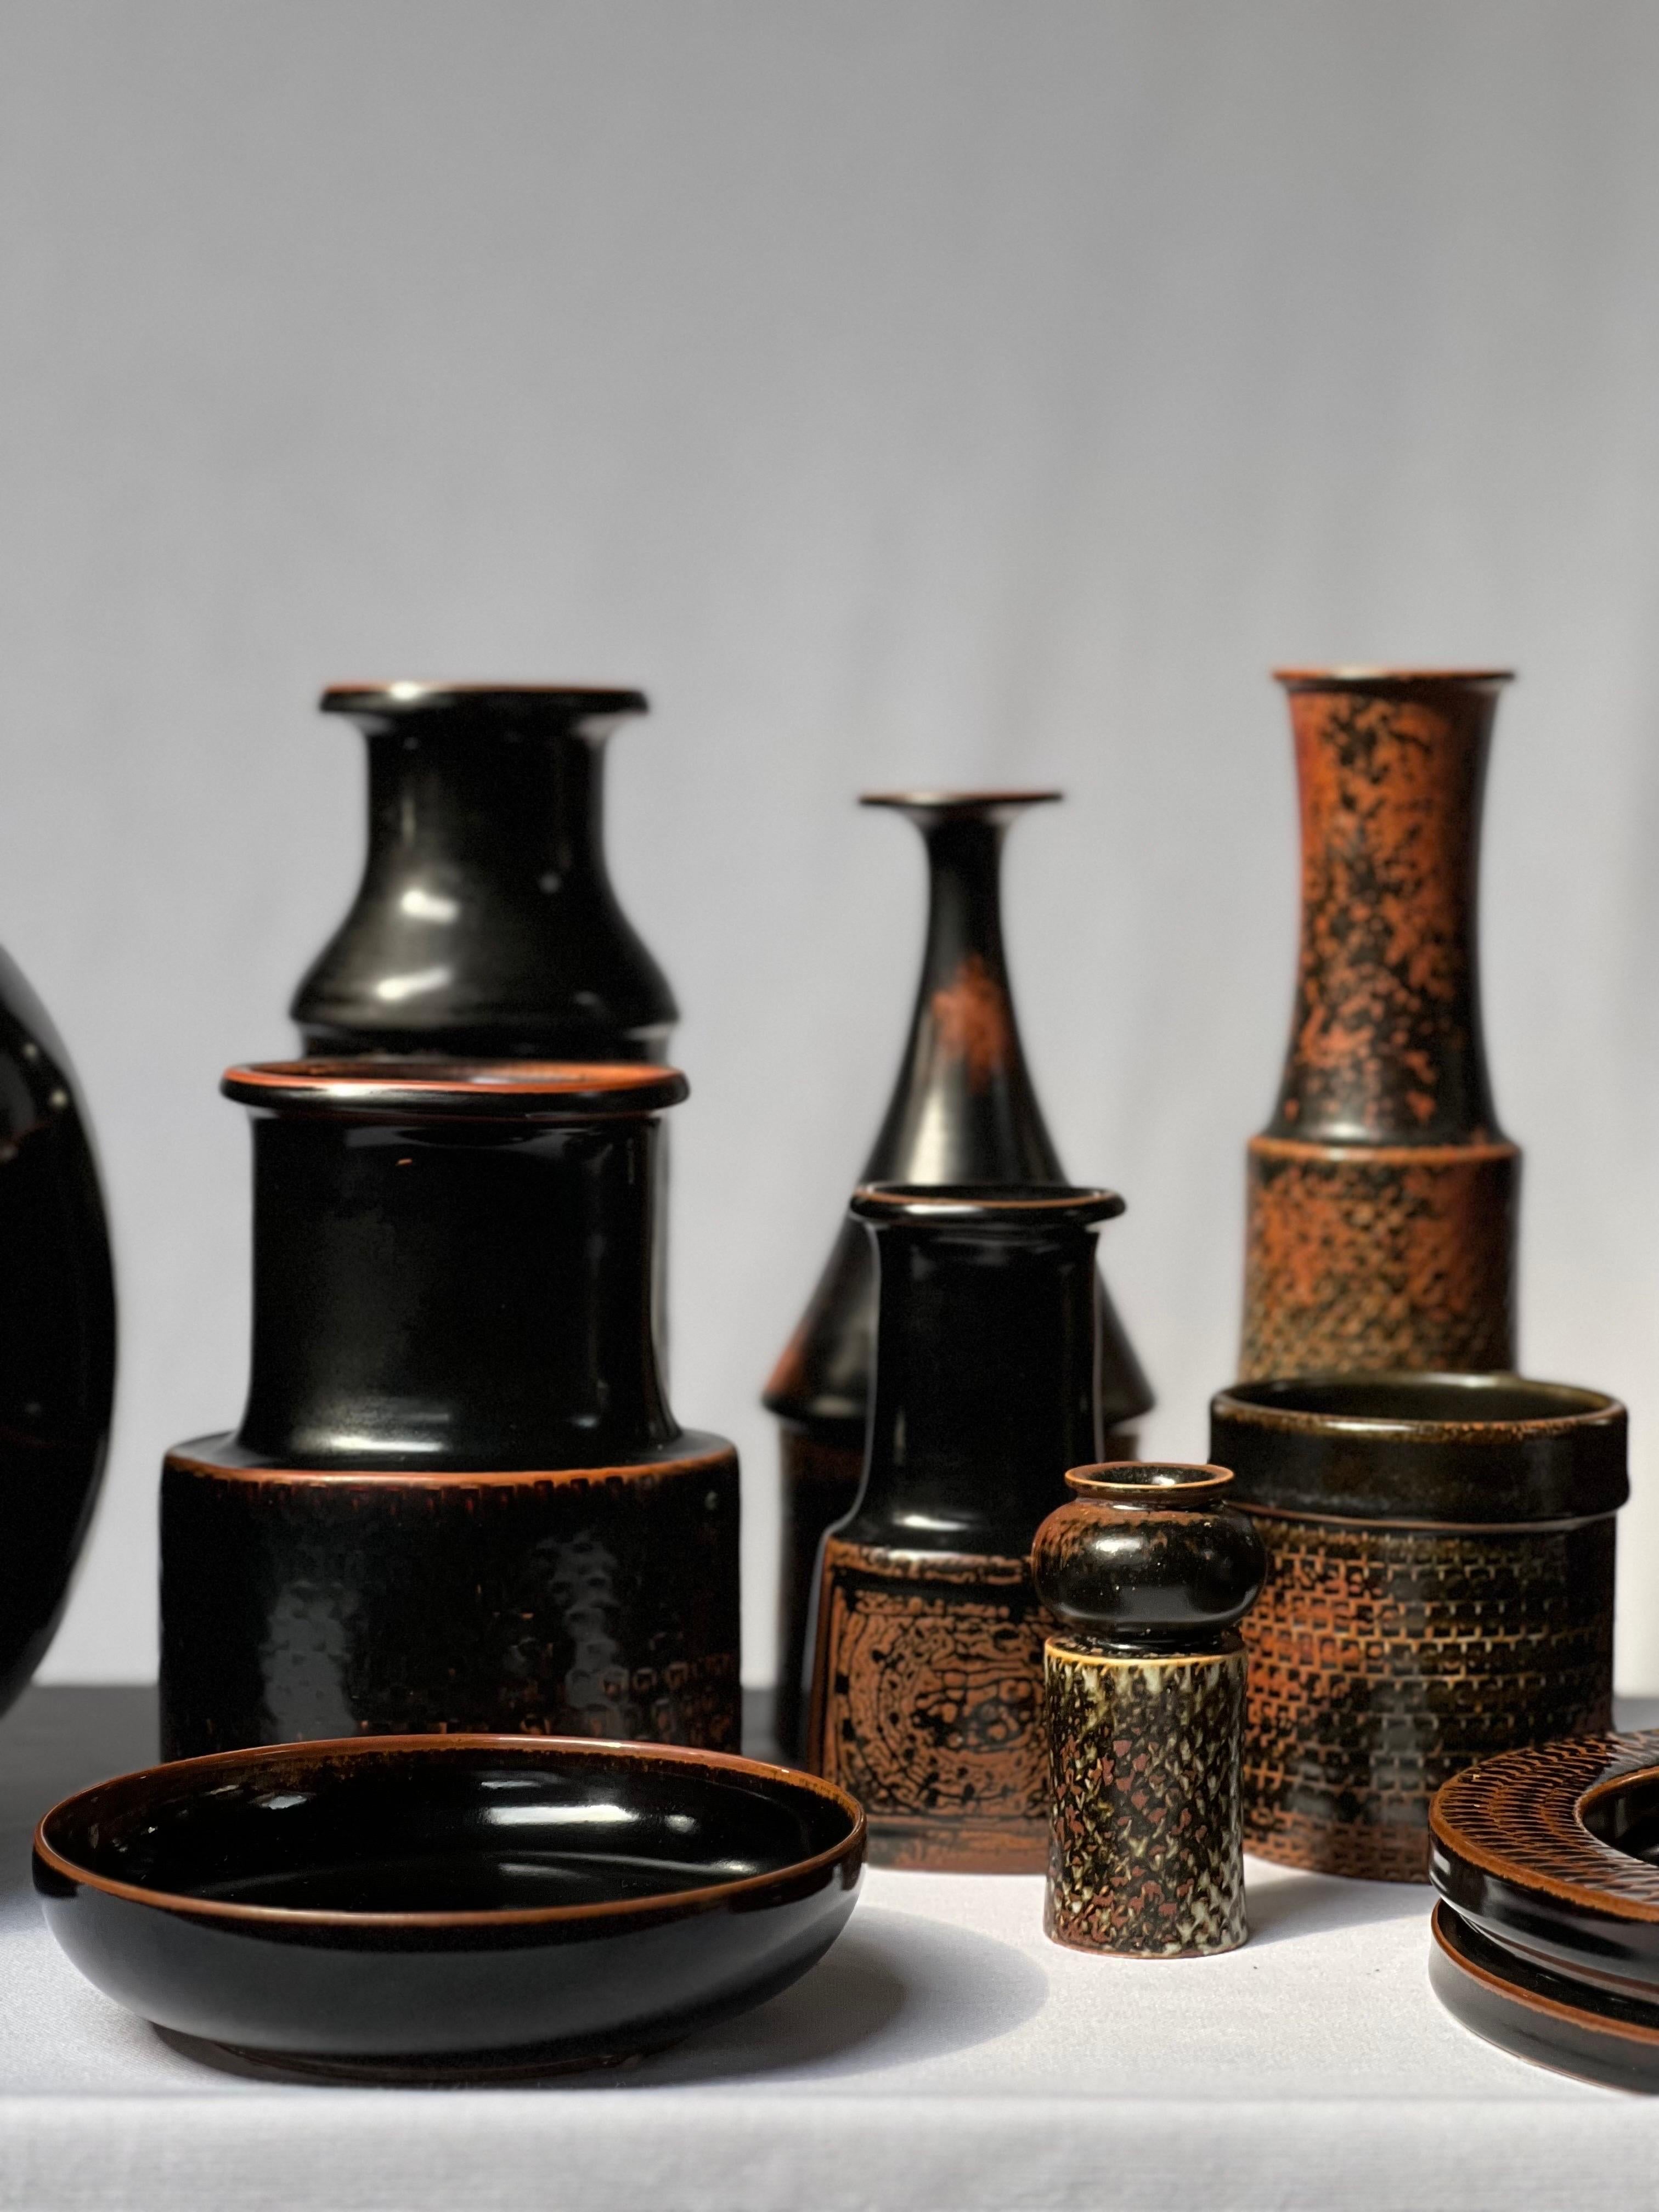 Stig Lindberg Unique Vase in black Glaze Tenmoku Made by Hand Sweden 1968 For Sale 7